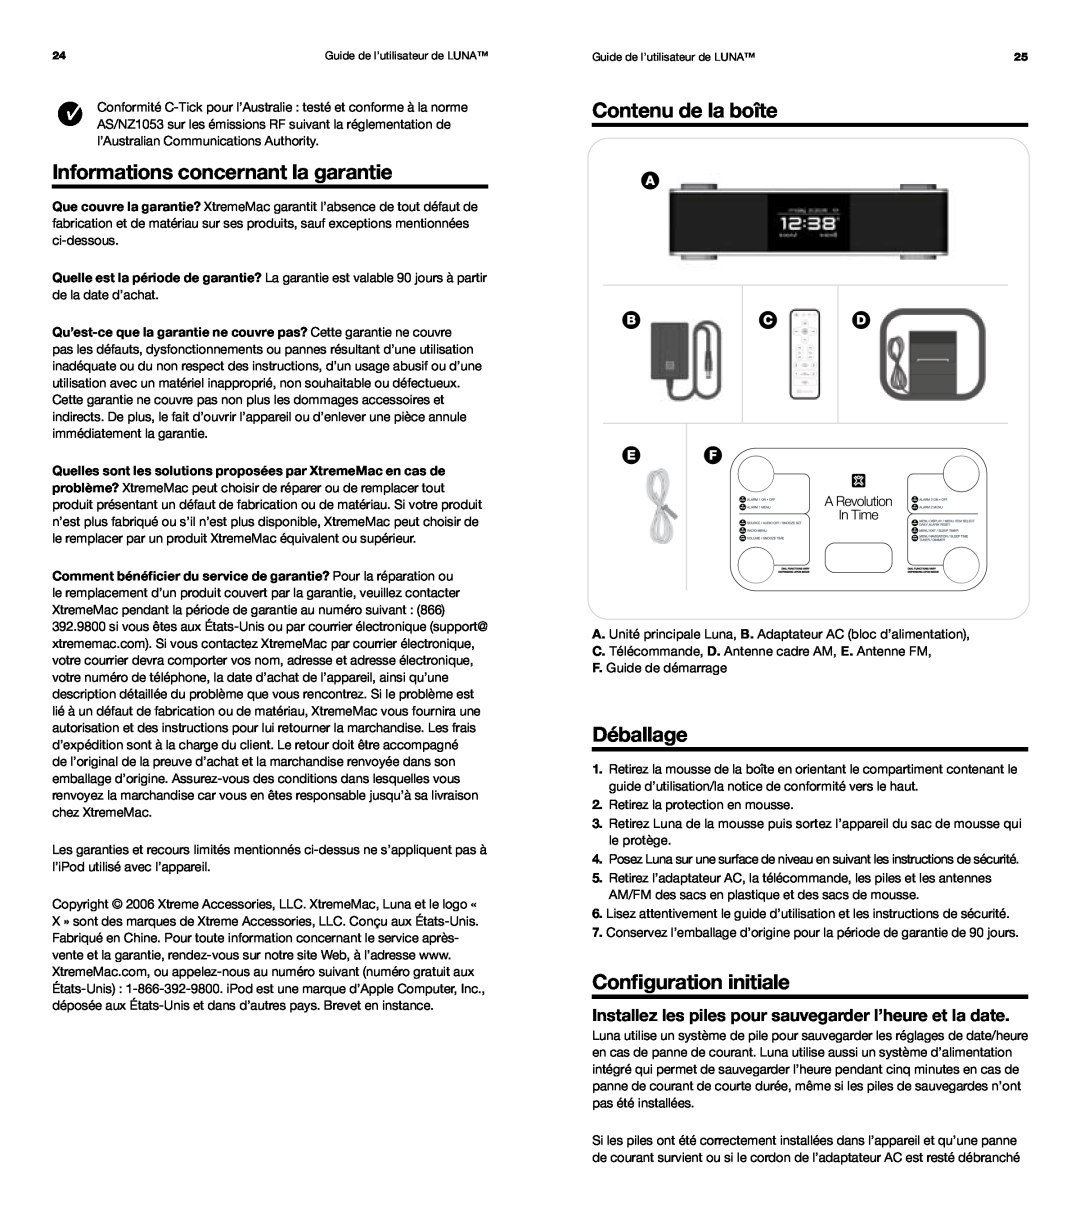 XtremeMac Room Audio System Informations concernant la garantie, Contenu de la boîte, Déballage, Configuration initiale 